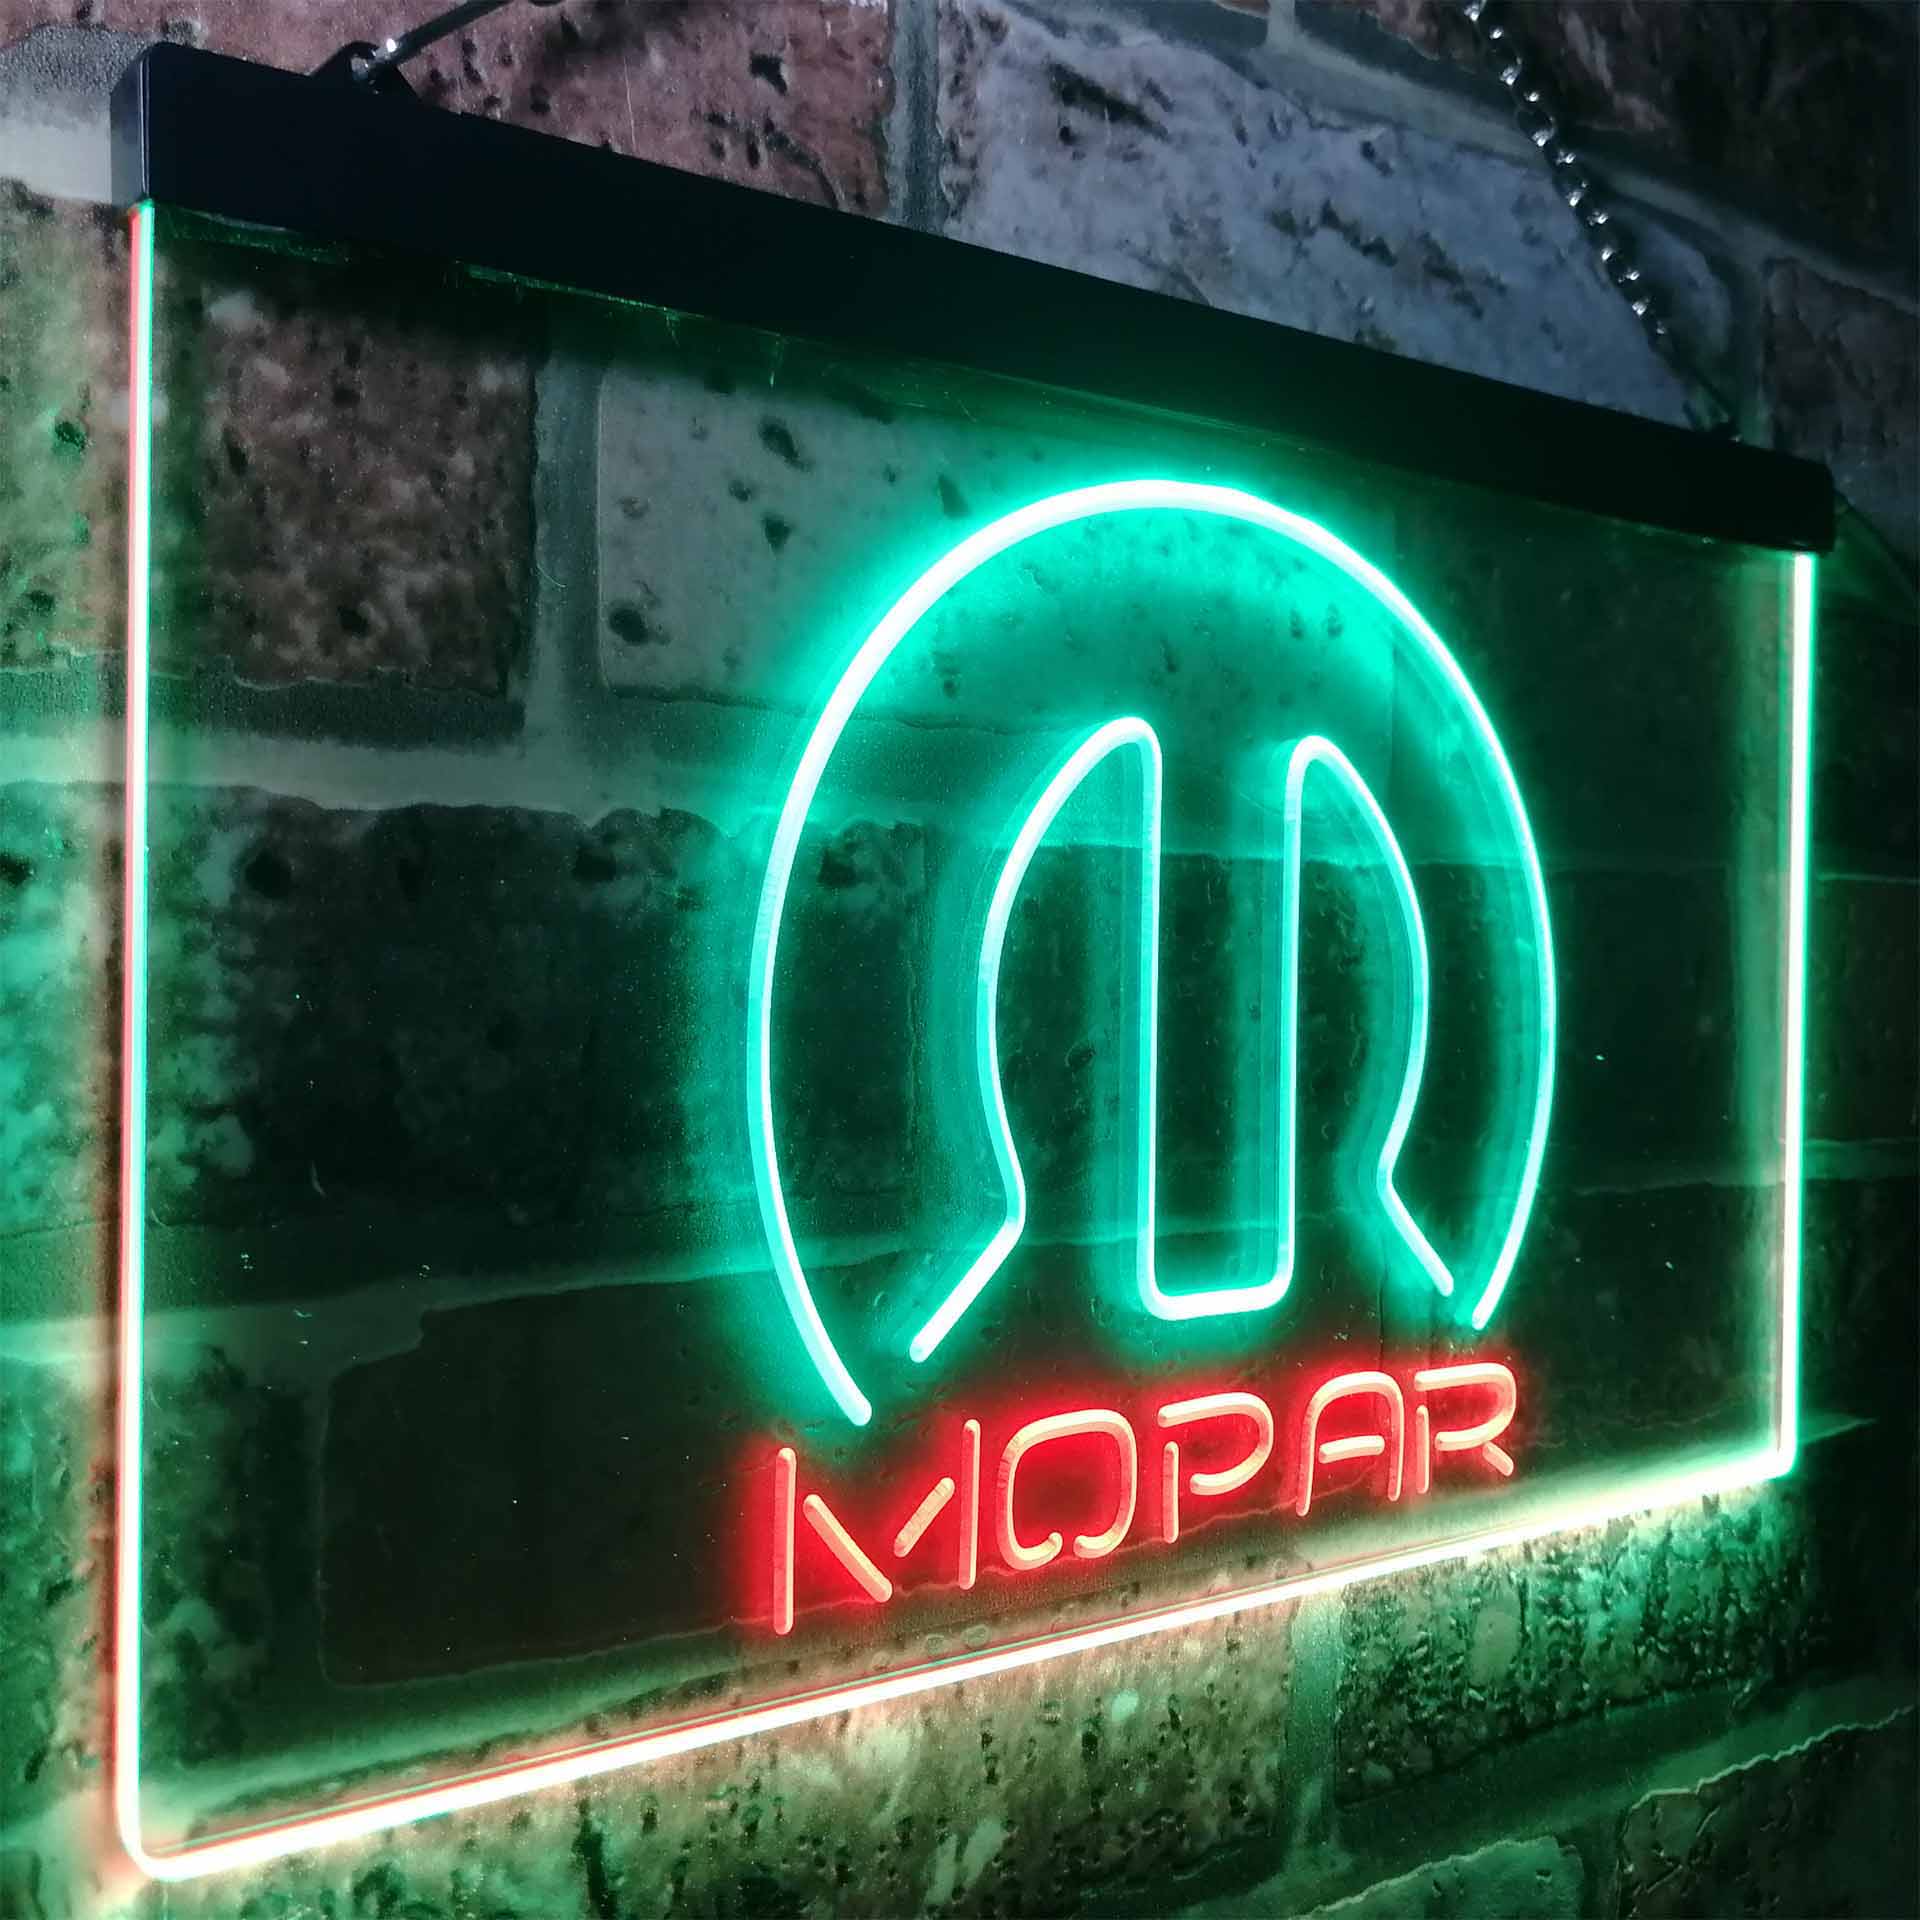 Mopar Car LED Neon Sign